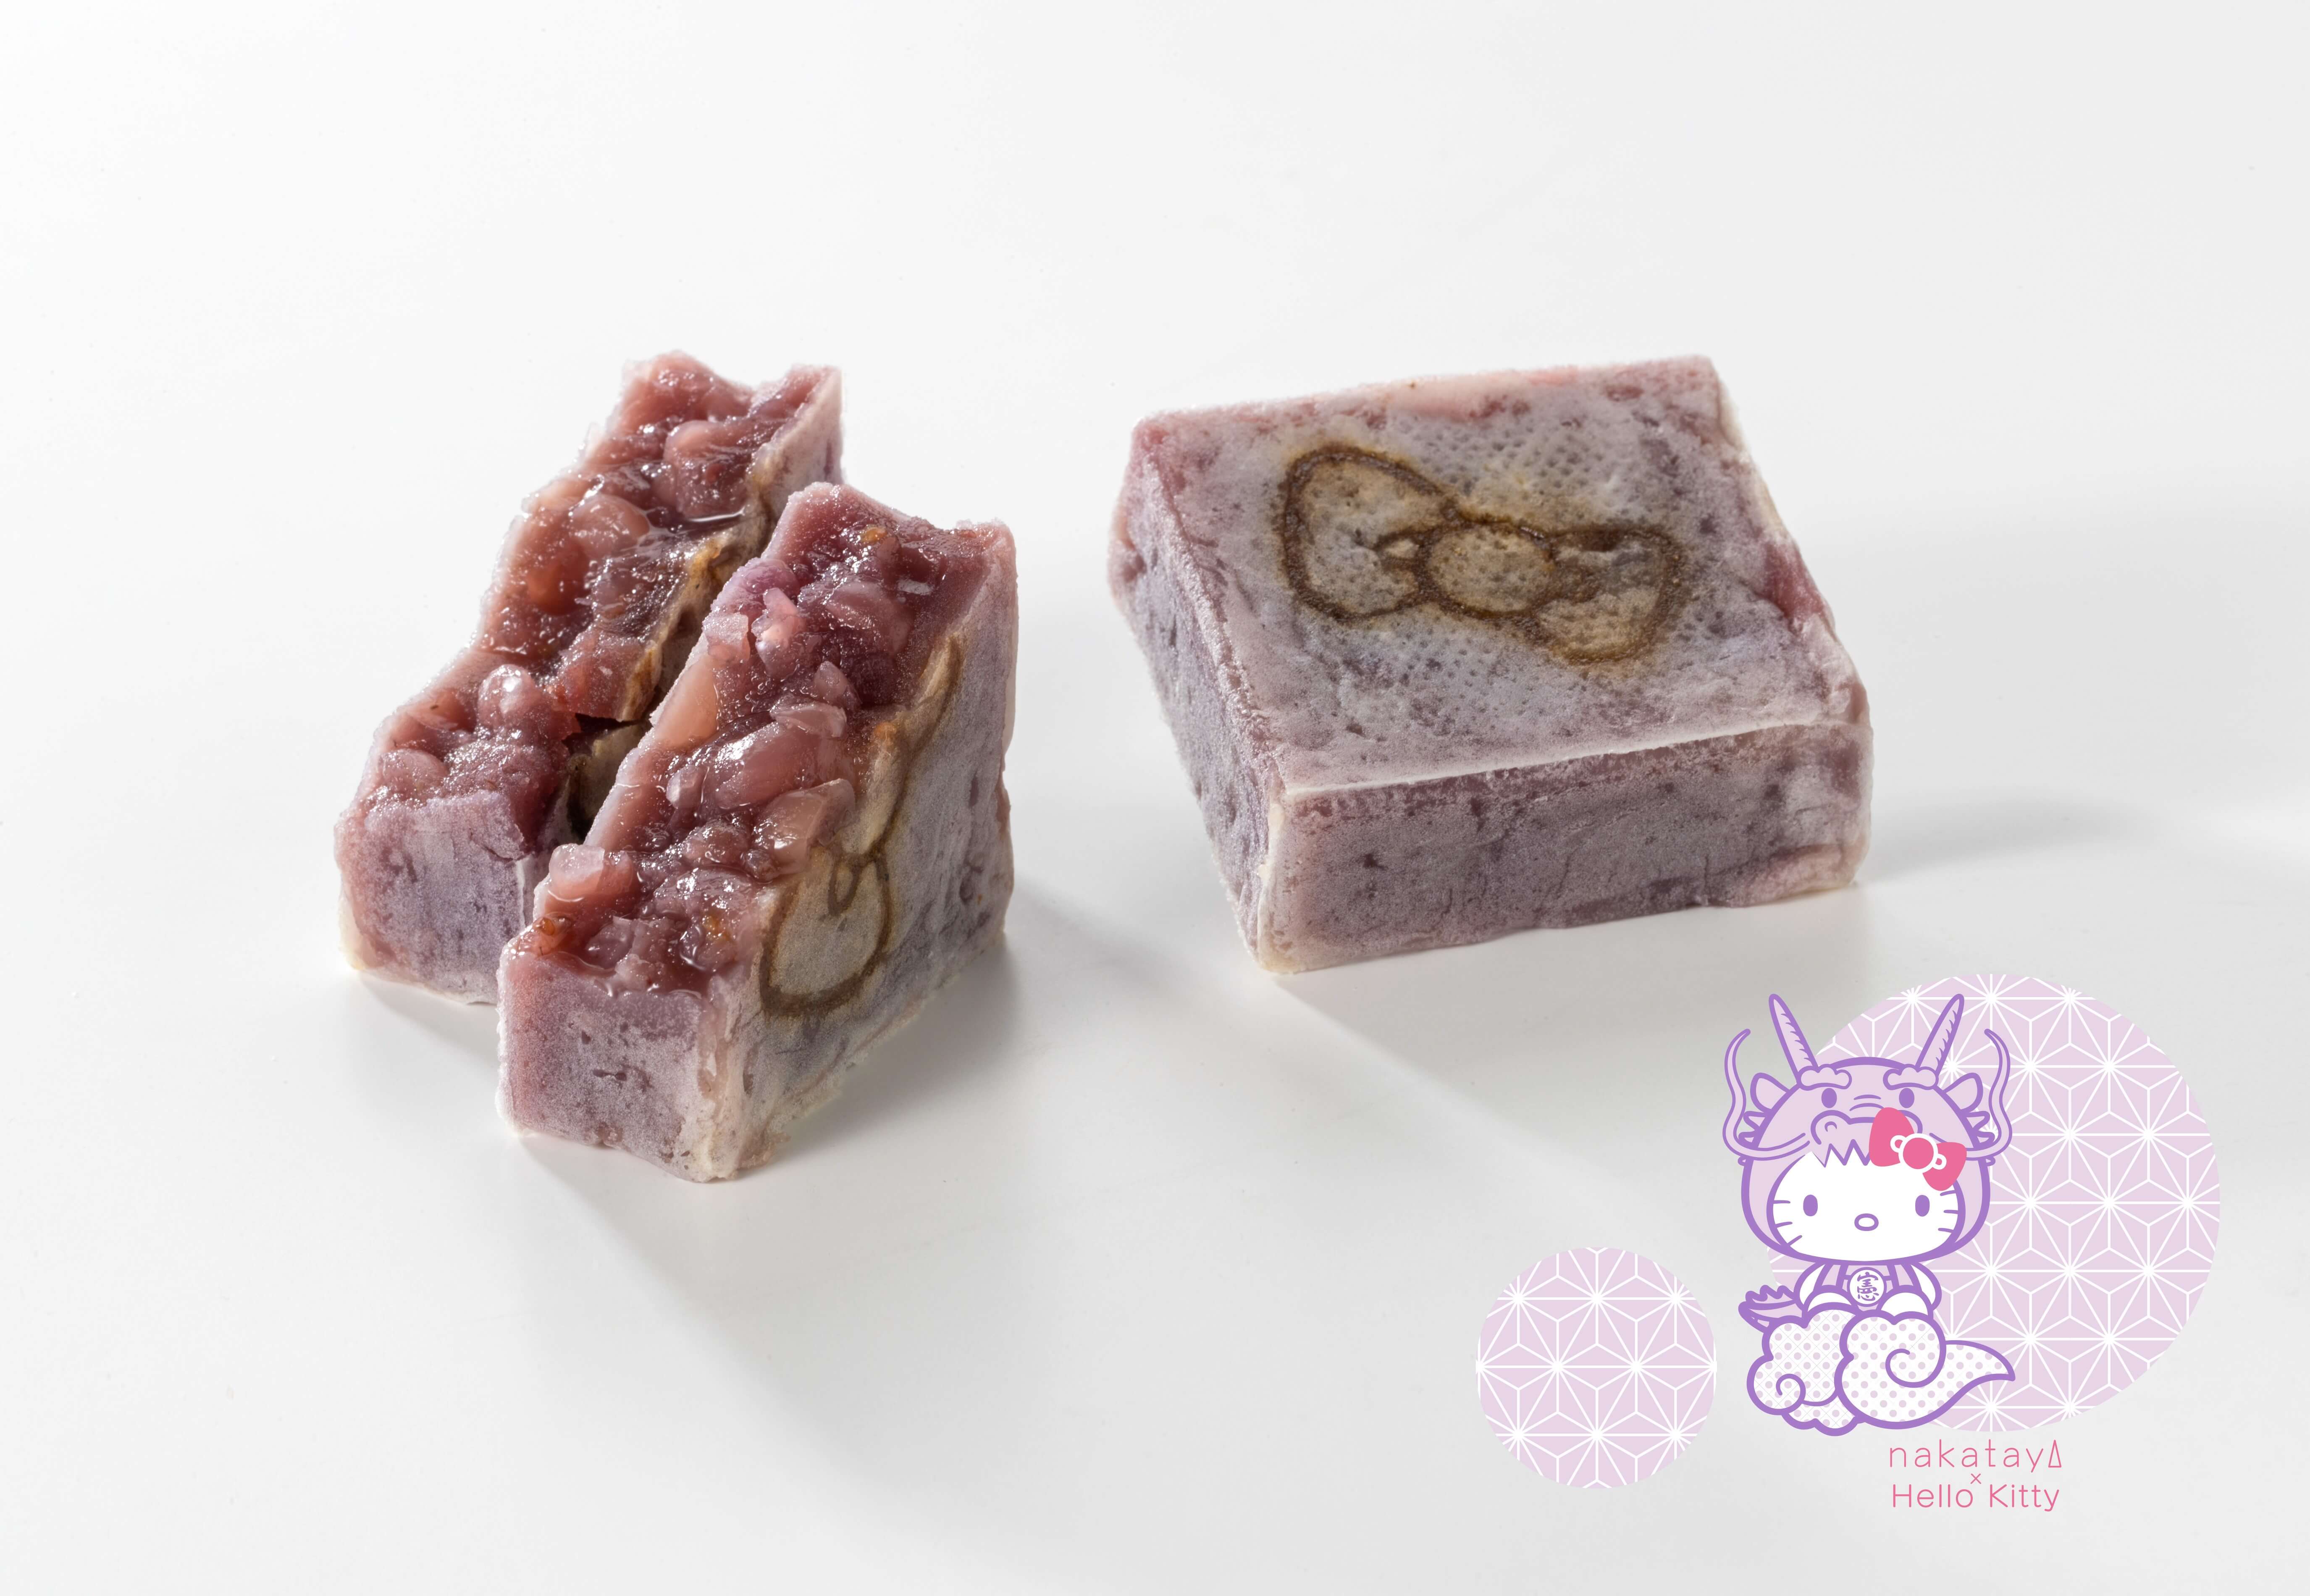 ハローキティ きんつば 和菓子 Hello kitty kintsuba Japanese sweets 3